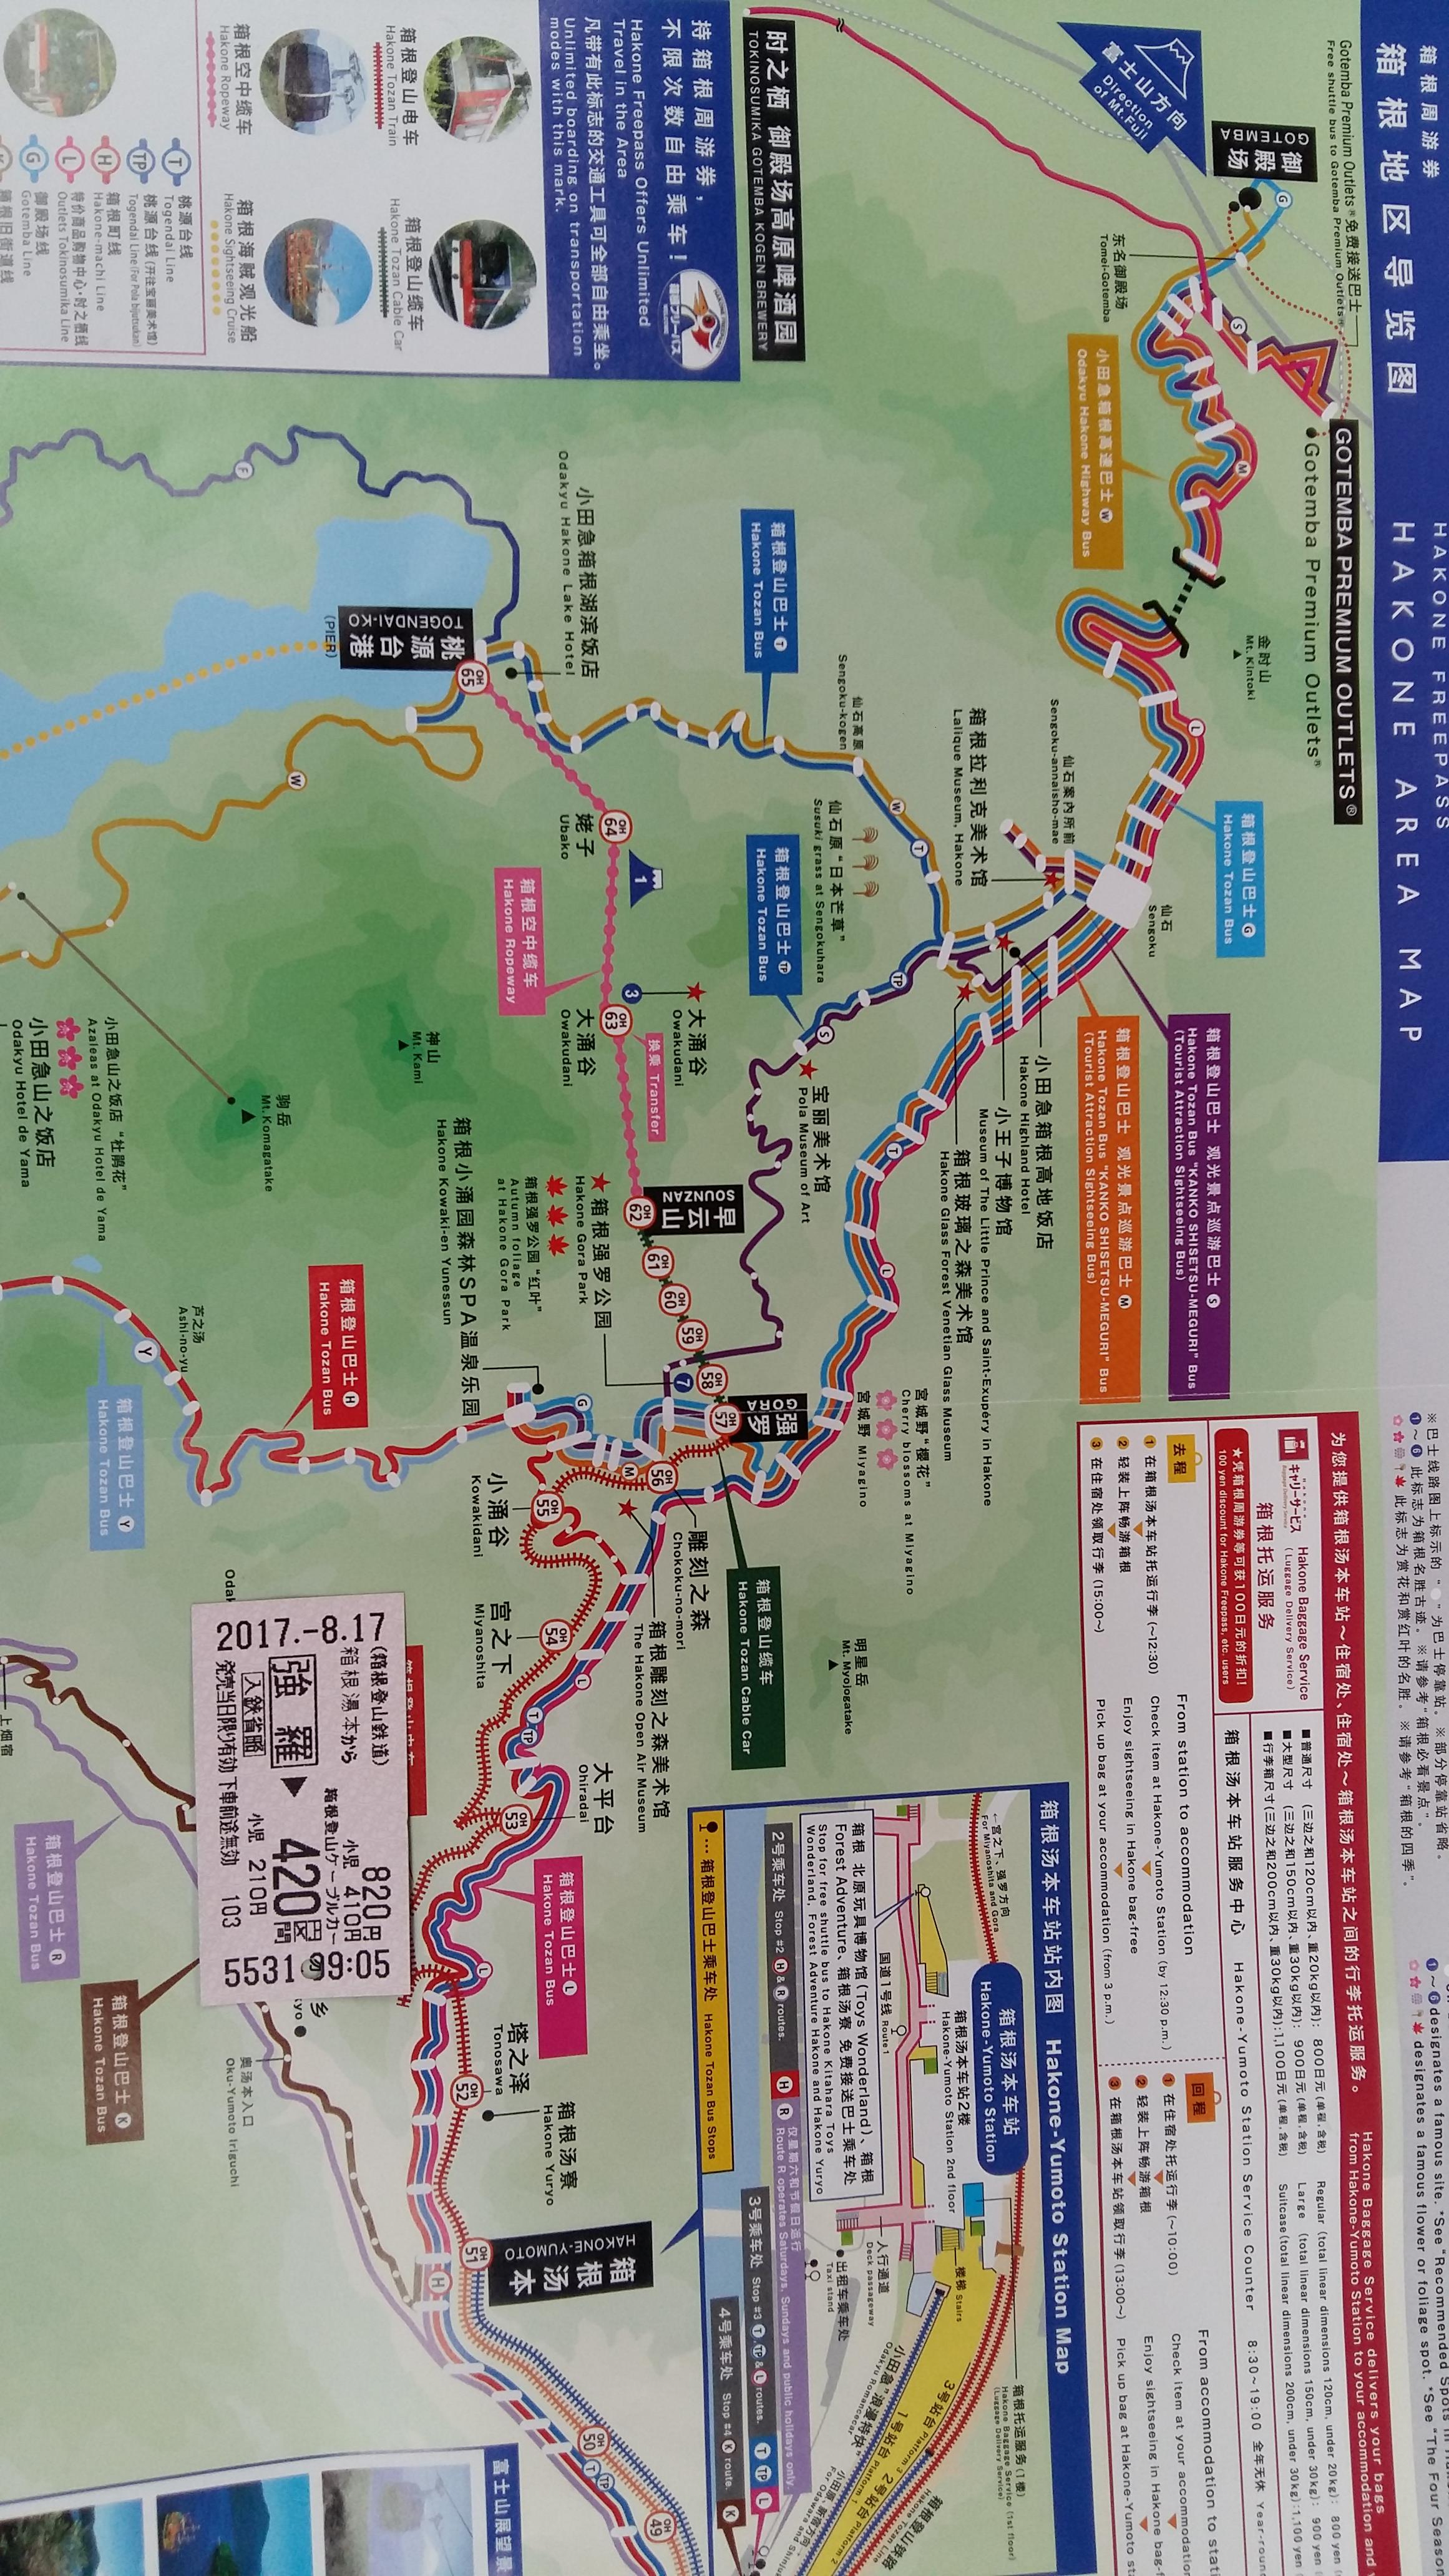 箱根索道不是个独立的景点,这个铁道是连接强罗公园和大涌谷的交通